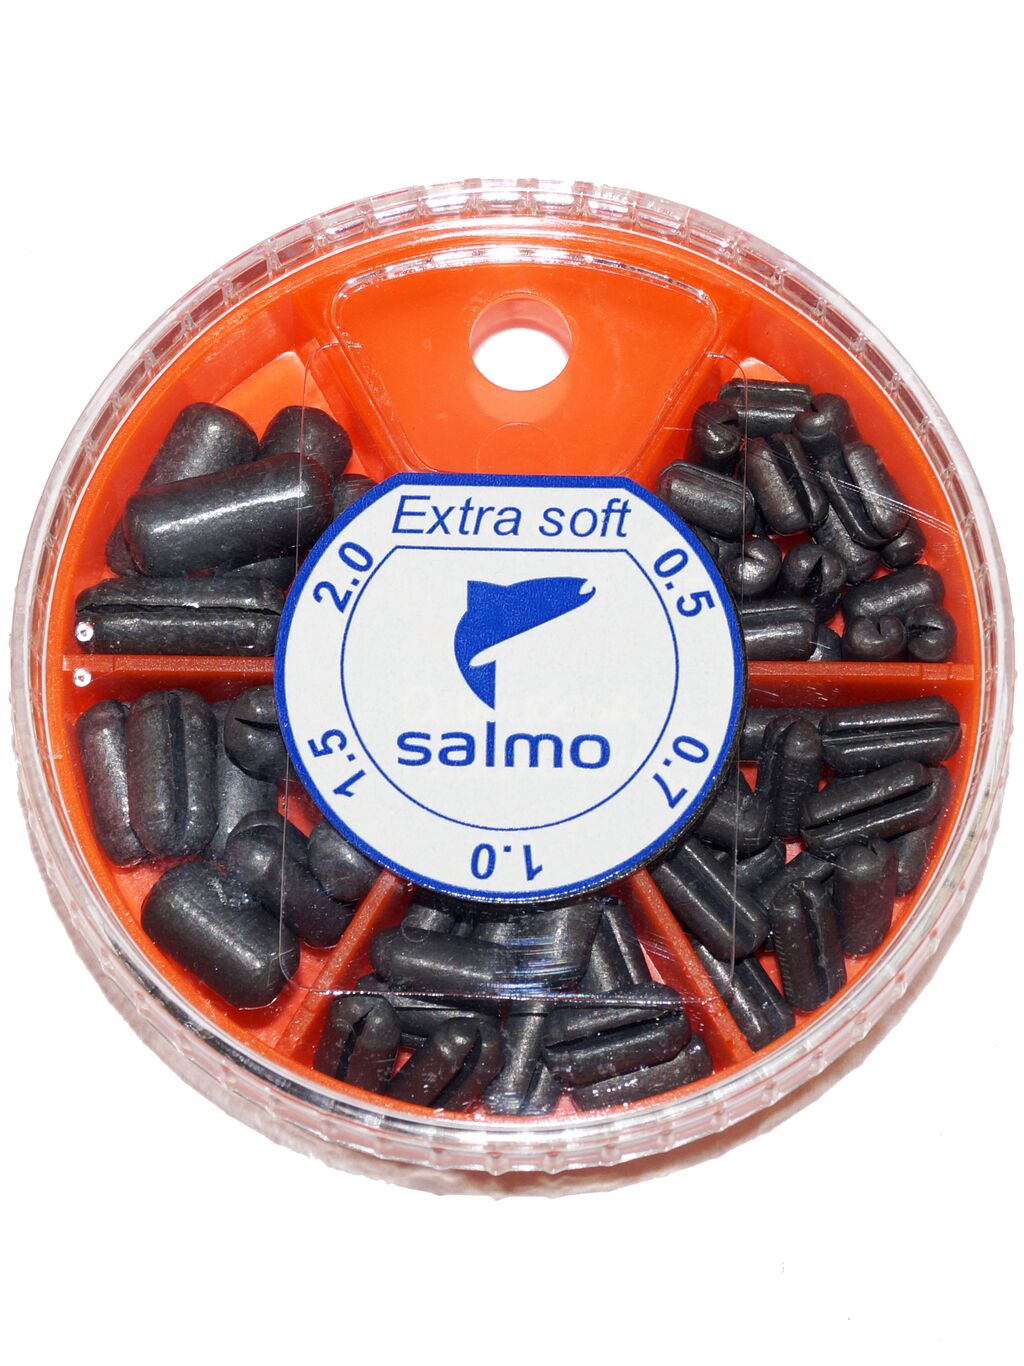 Грузила Salmo EXTRA SOFT малый 5 секц. 0,5-2,0г 060г набор 1